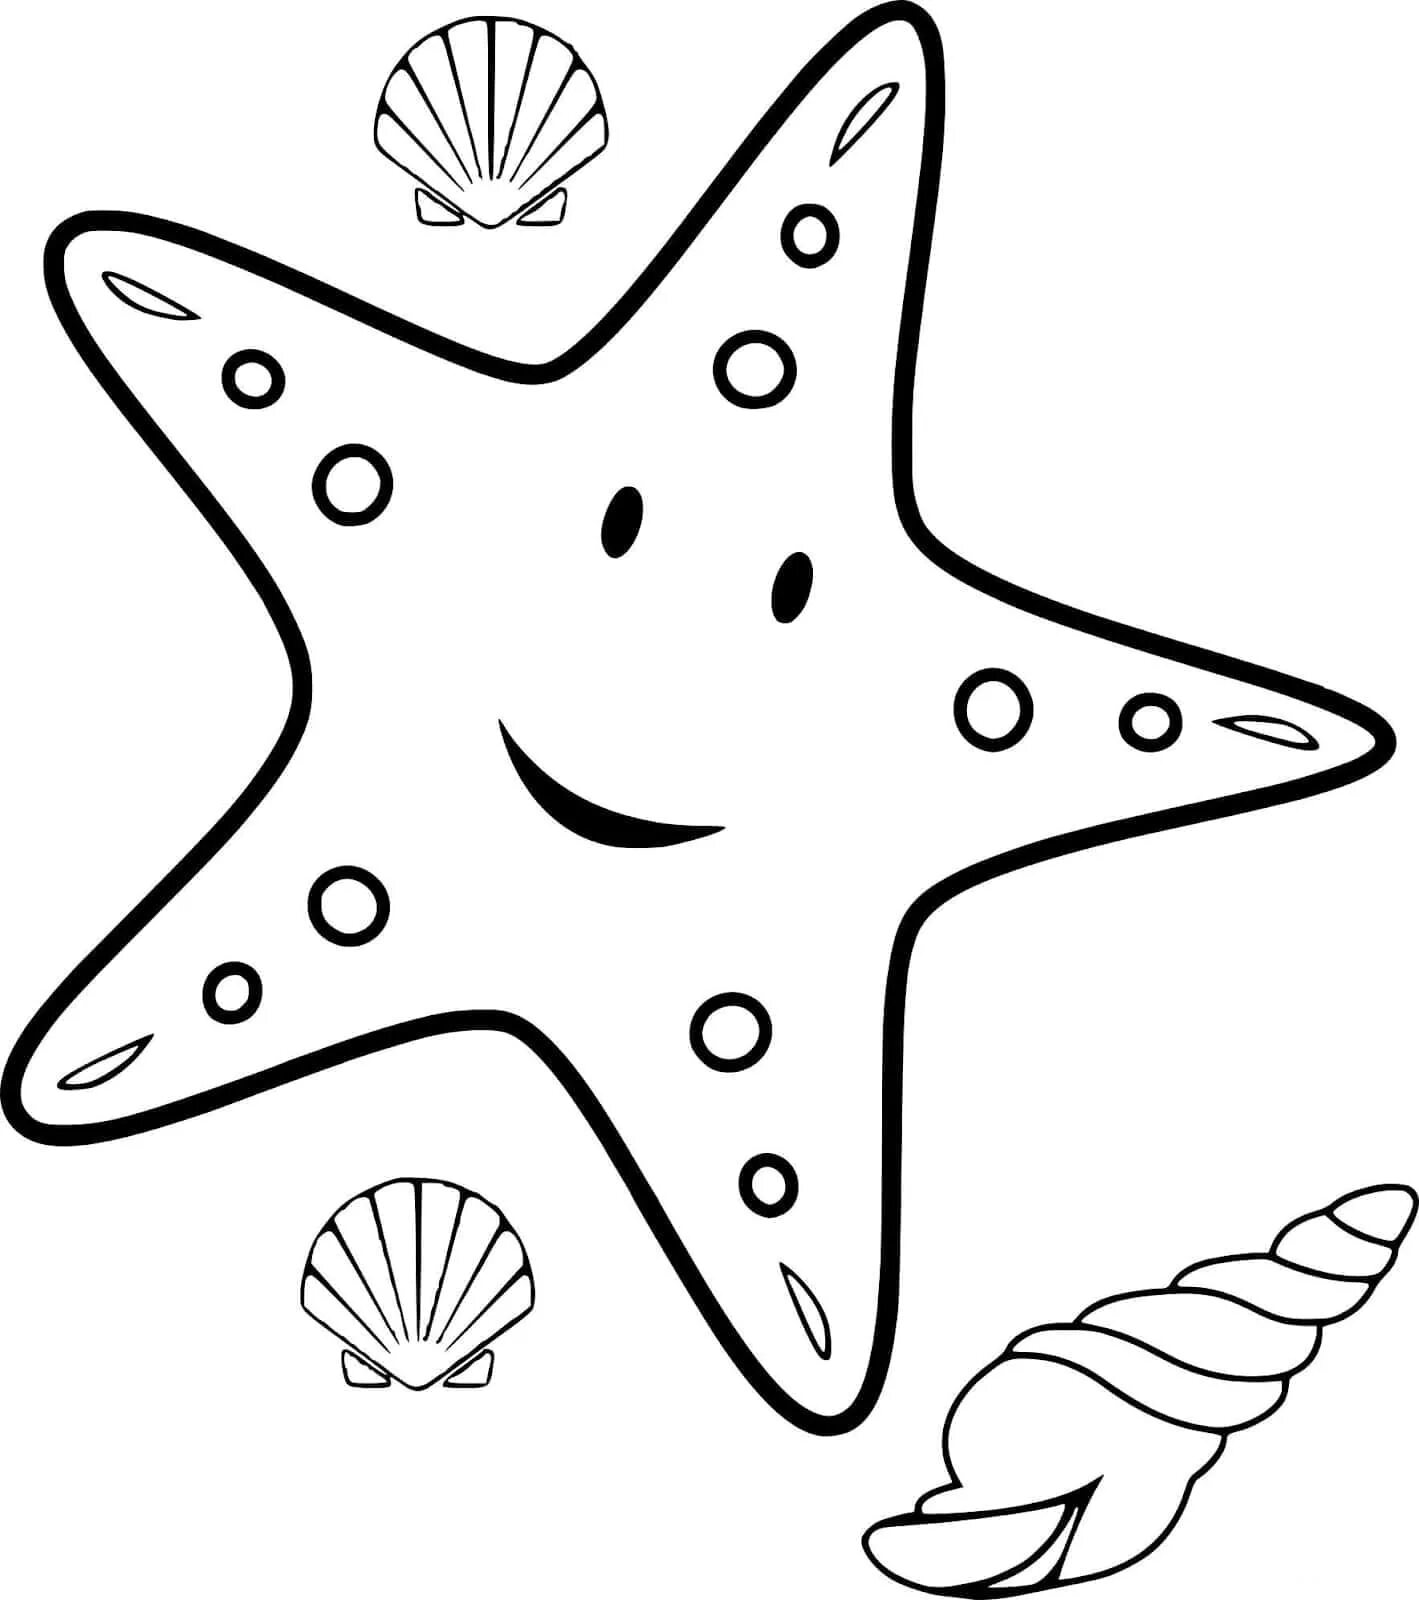 Раскраска морские обитатели. Морская звезда раскраска. Морские обитатели раскраска для детей. Раскраска морскиизвезды. Морские обитатели распечатать